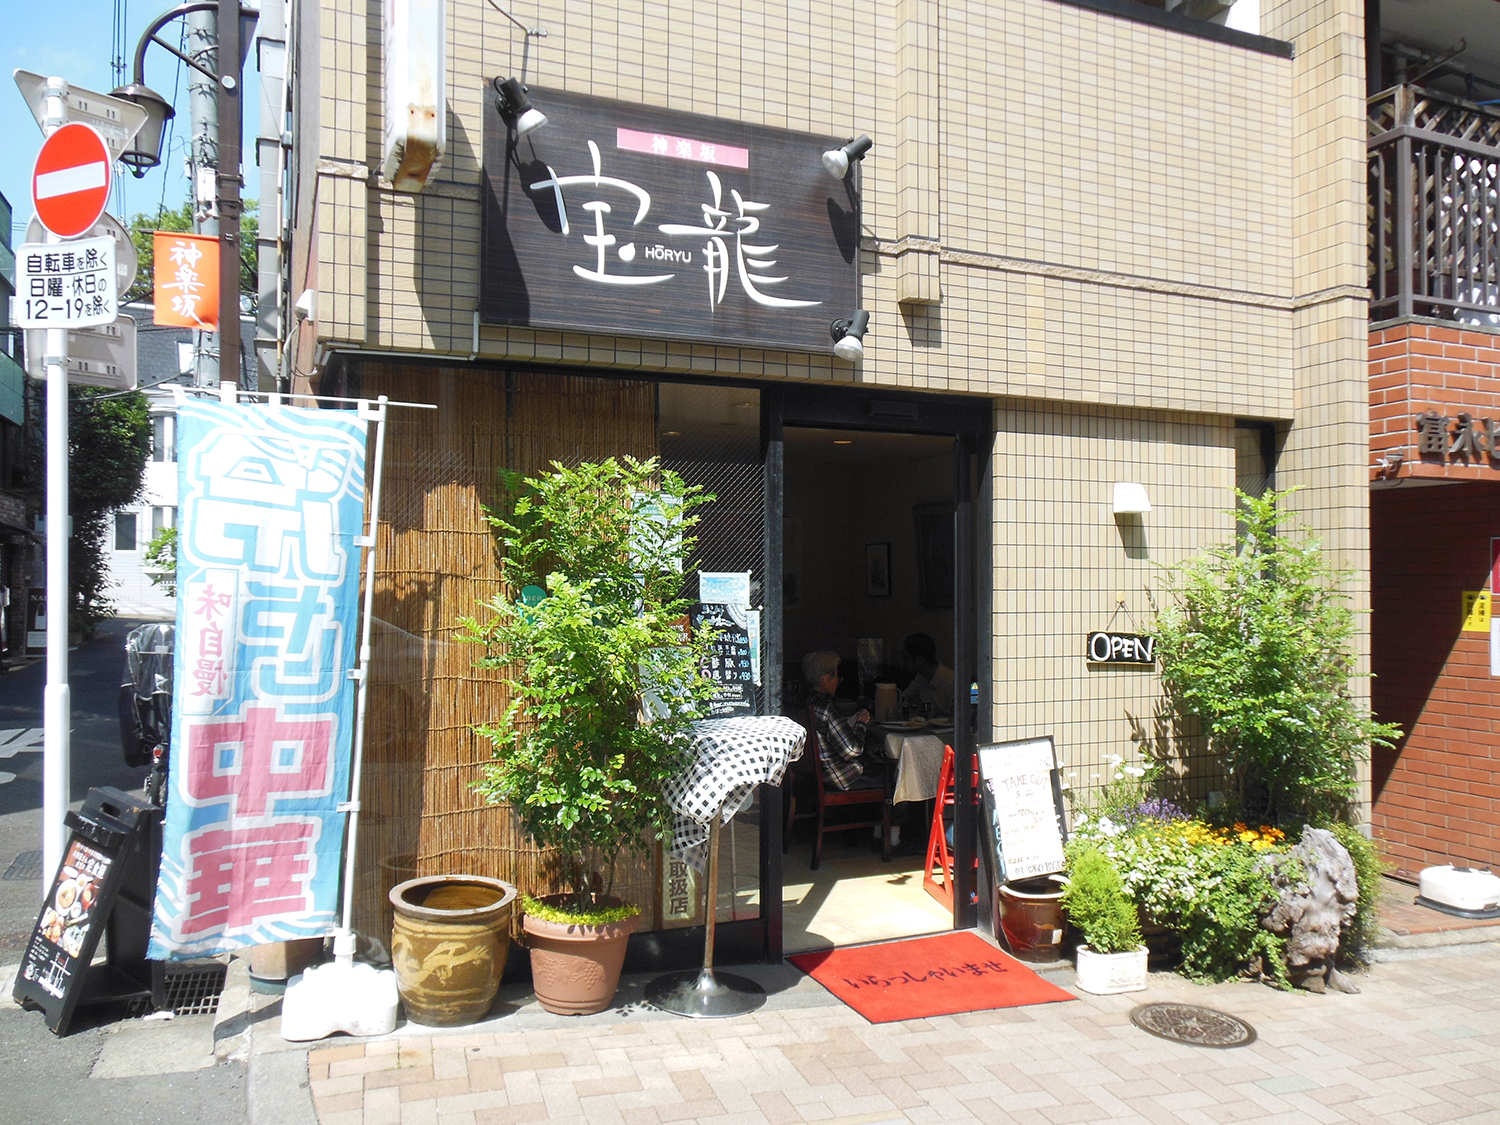 神楽坂通り沿い。はす向かいには、明治創業の老舗スーパー「神楽坂KIMURAYA」がある。